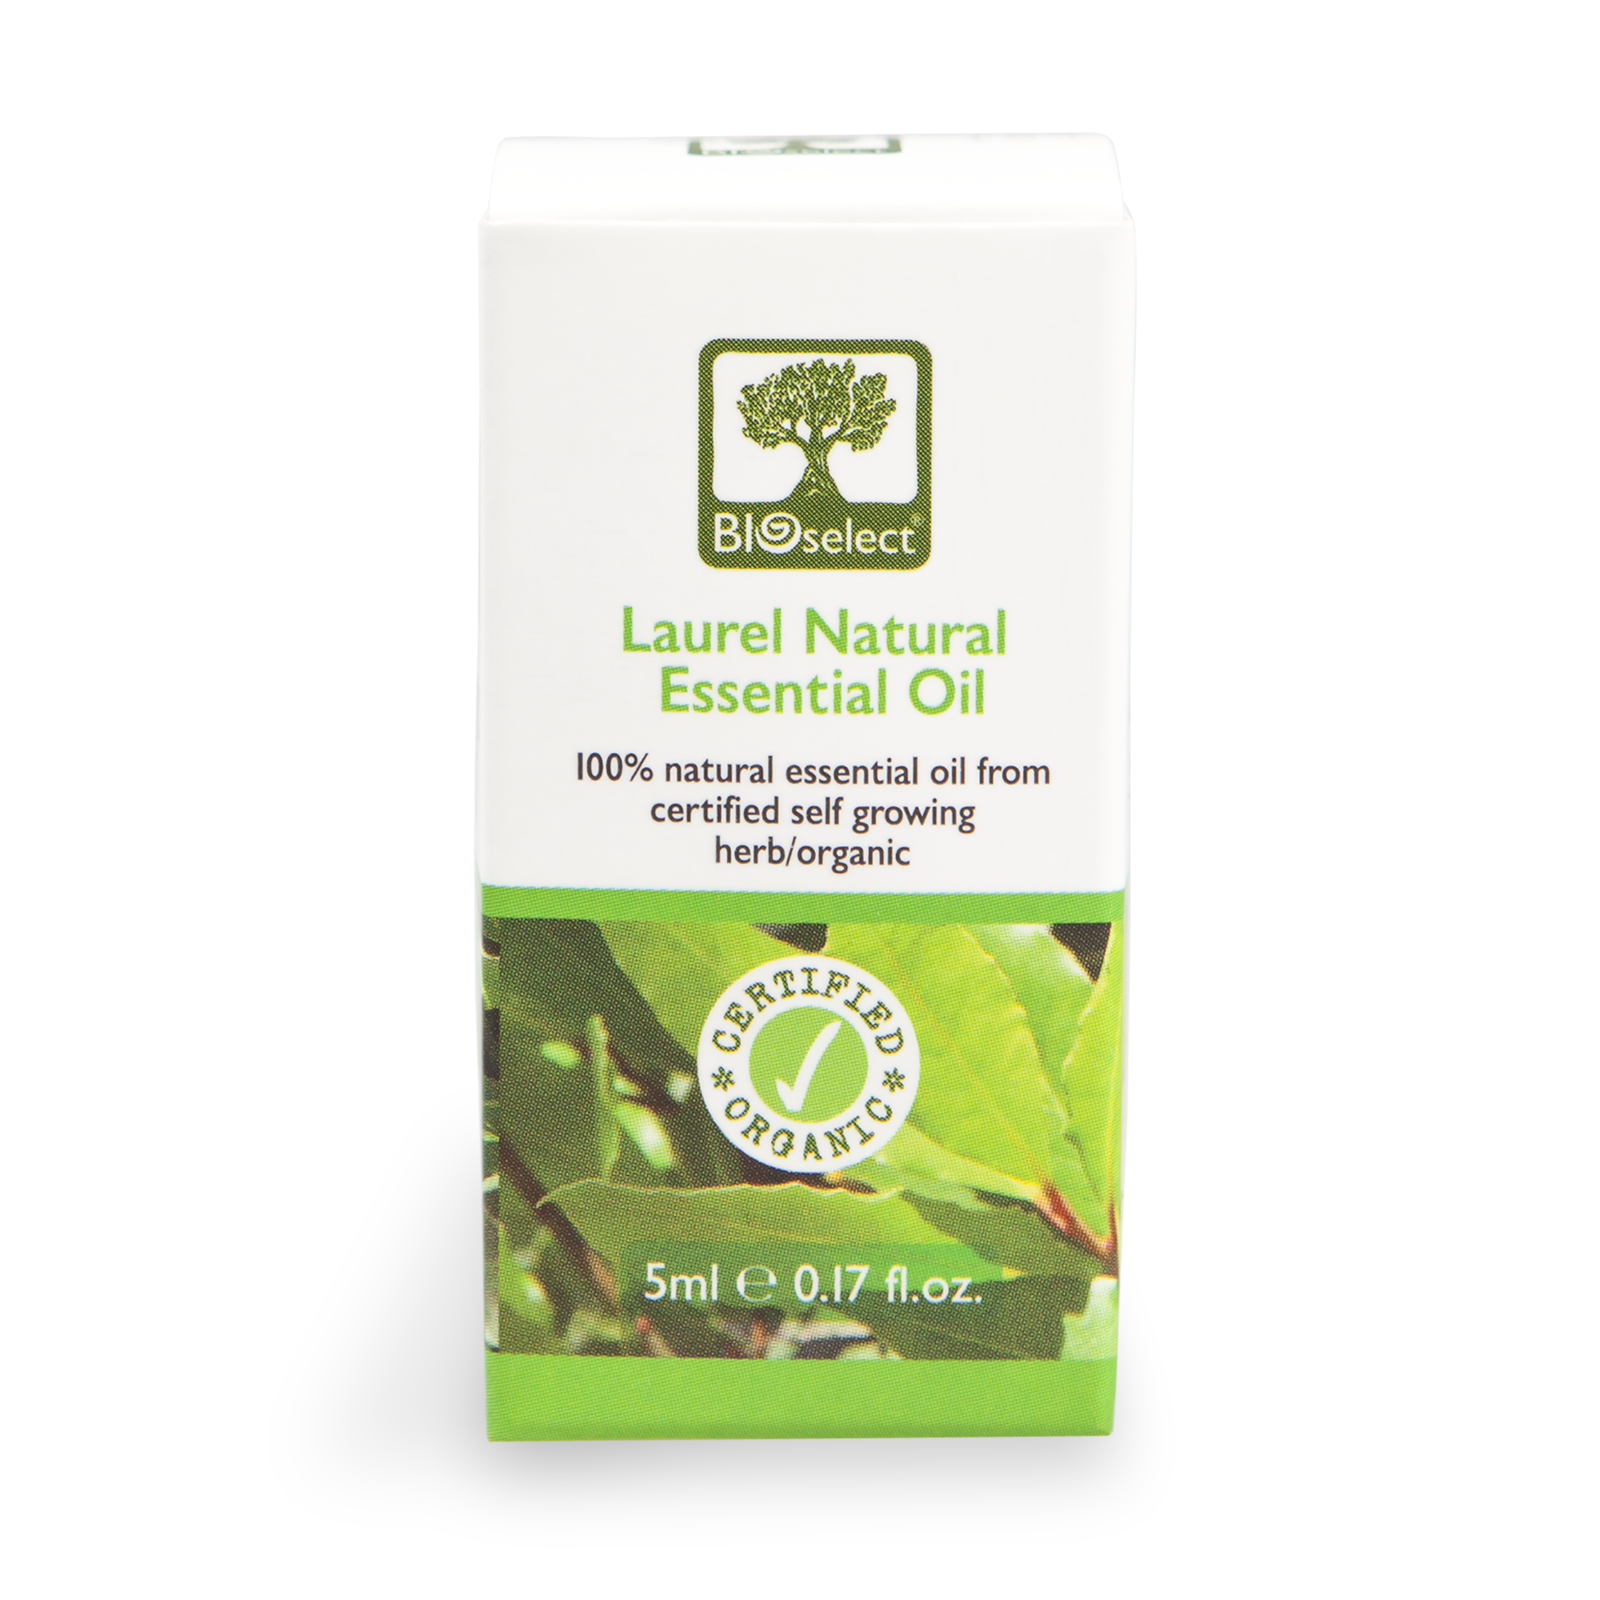 Bioselect Laurel Natural Essential Oil Certified Organic